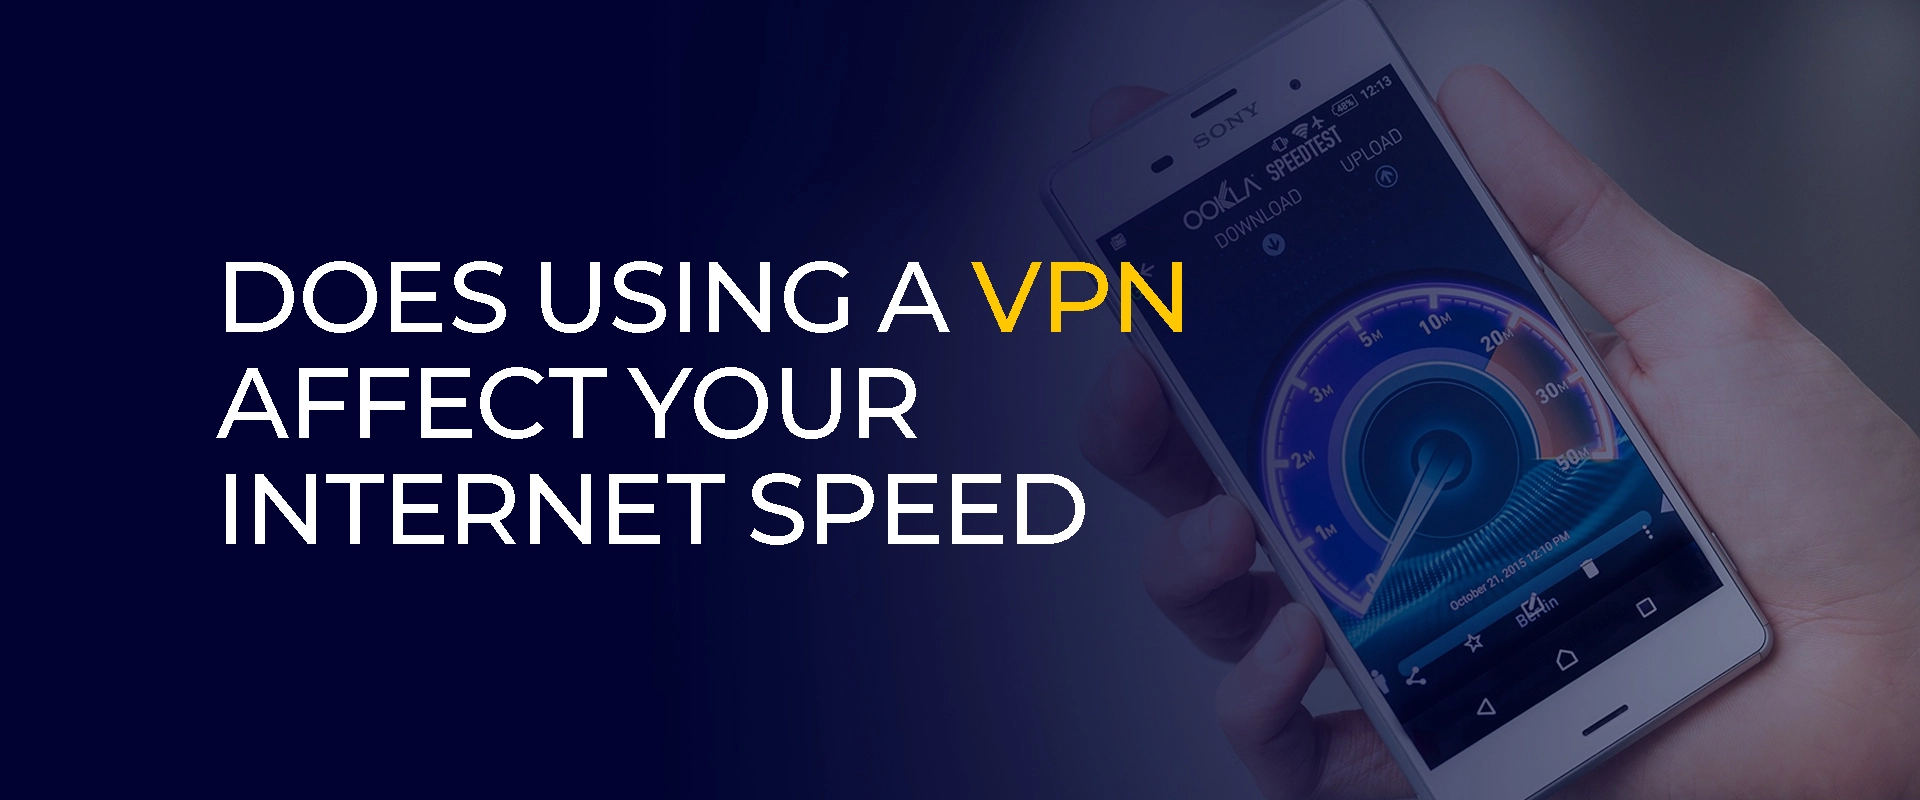 O uso de uma VPN afeta a velocidade da sua Internet